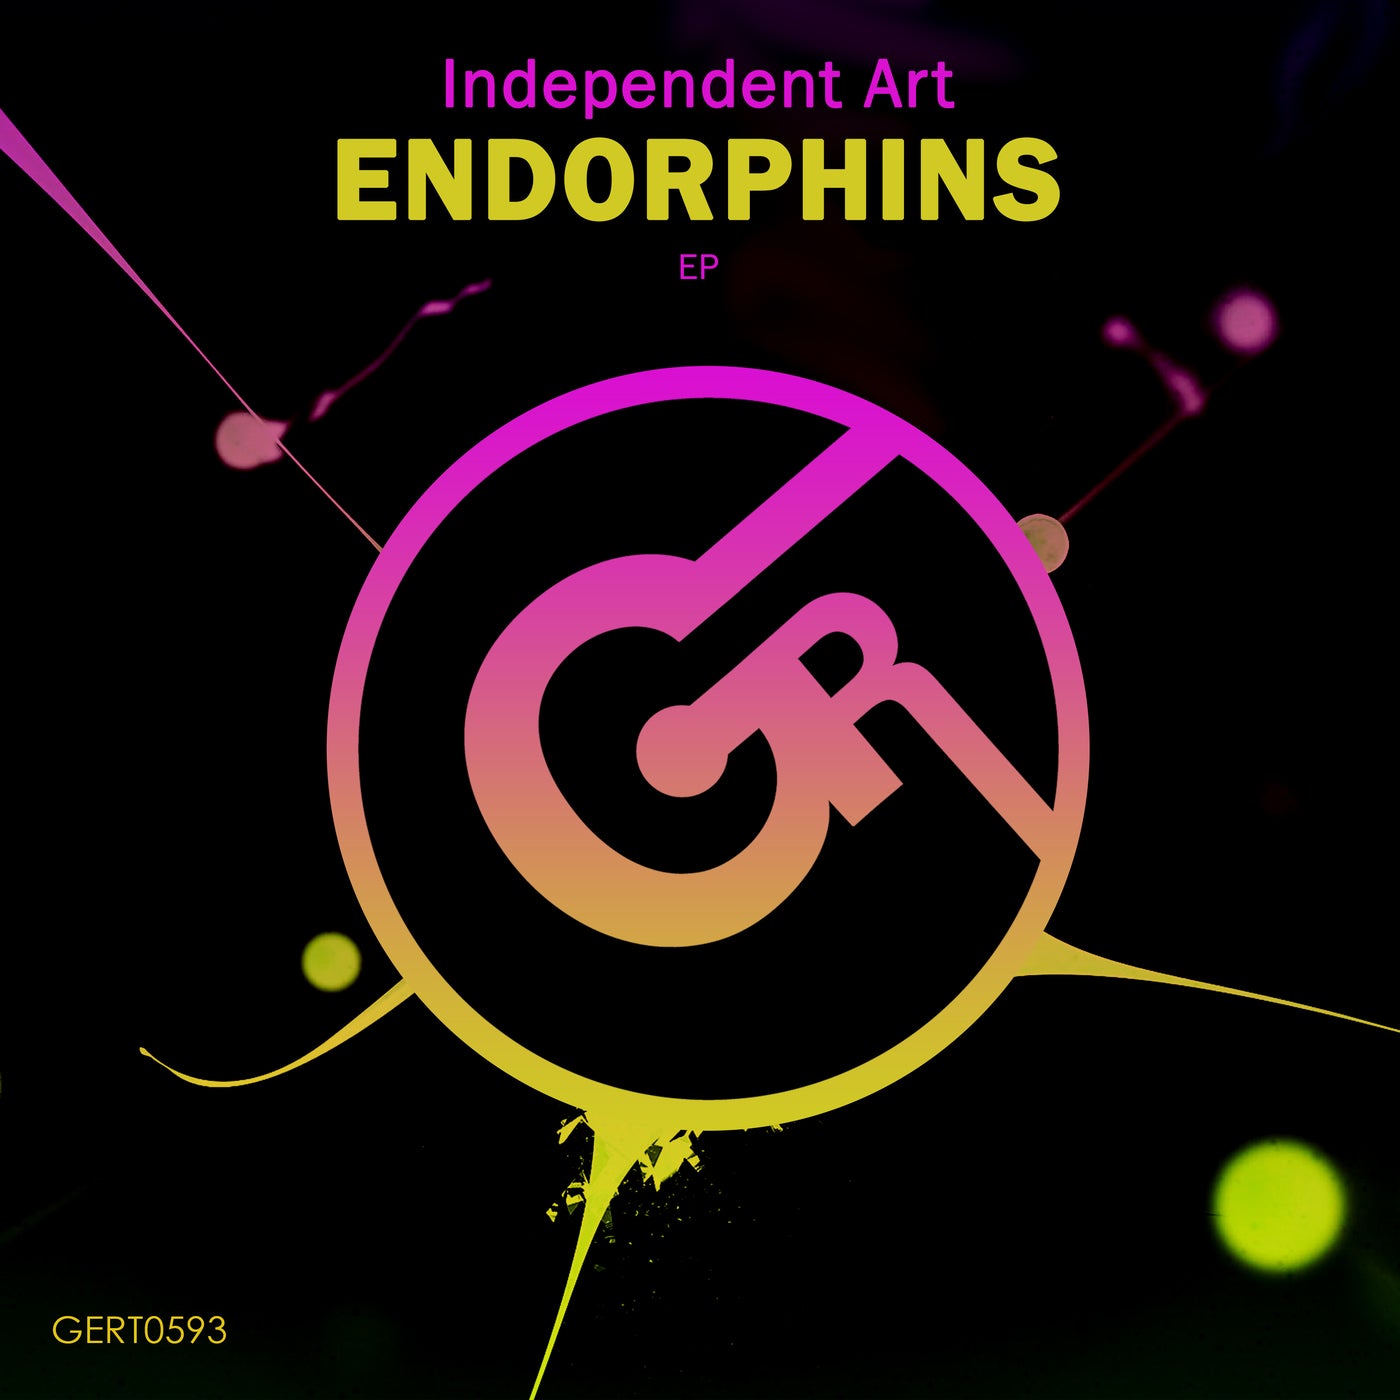 Endorphins EP